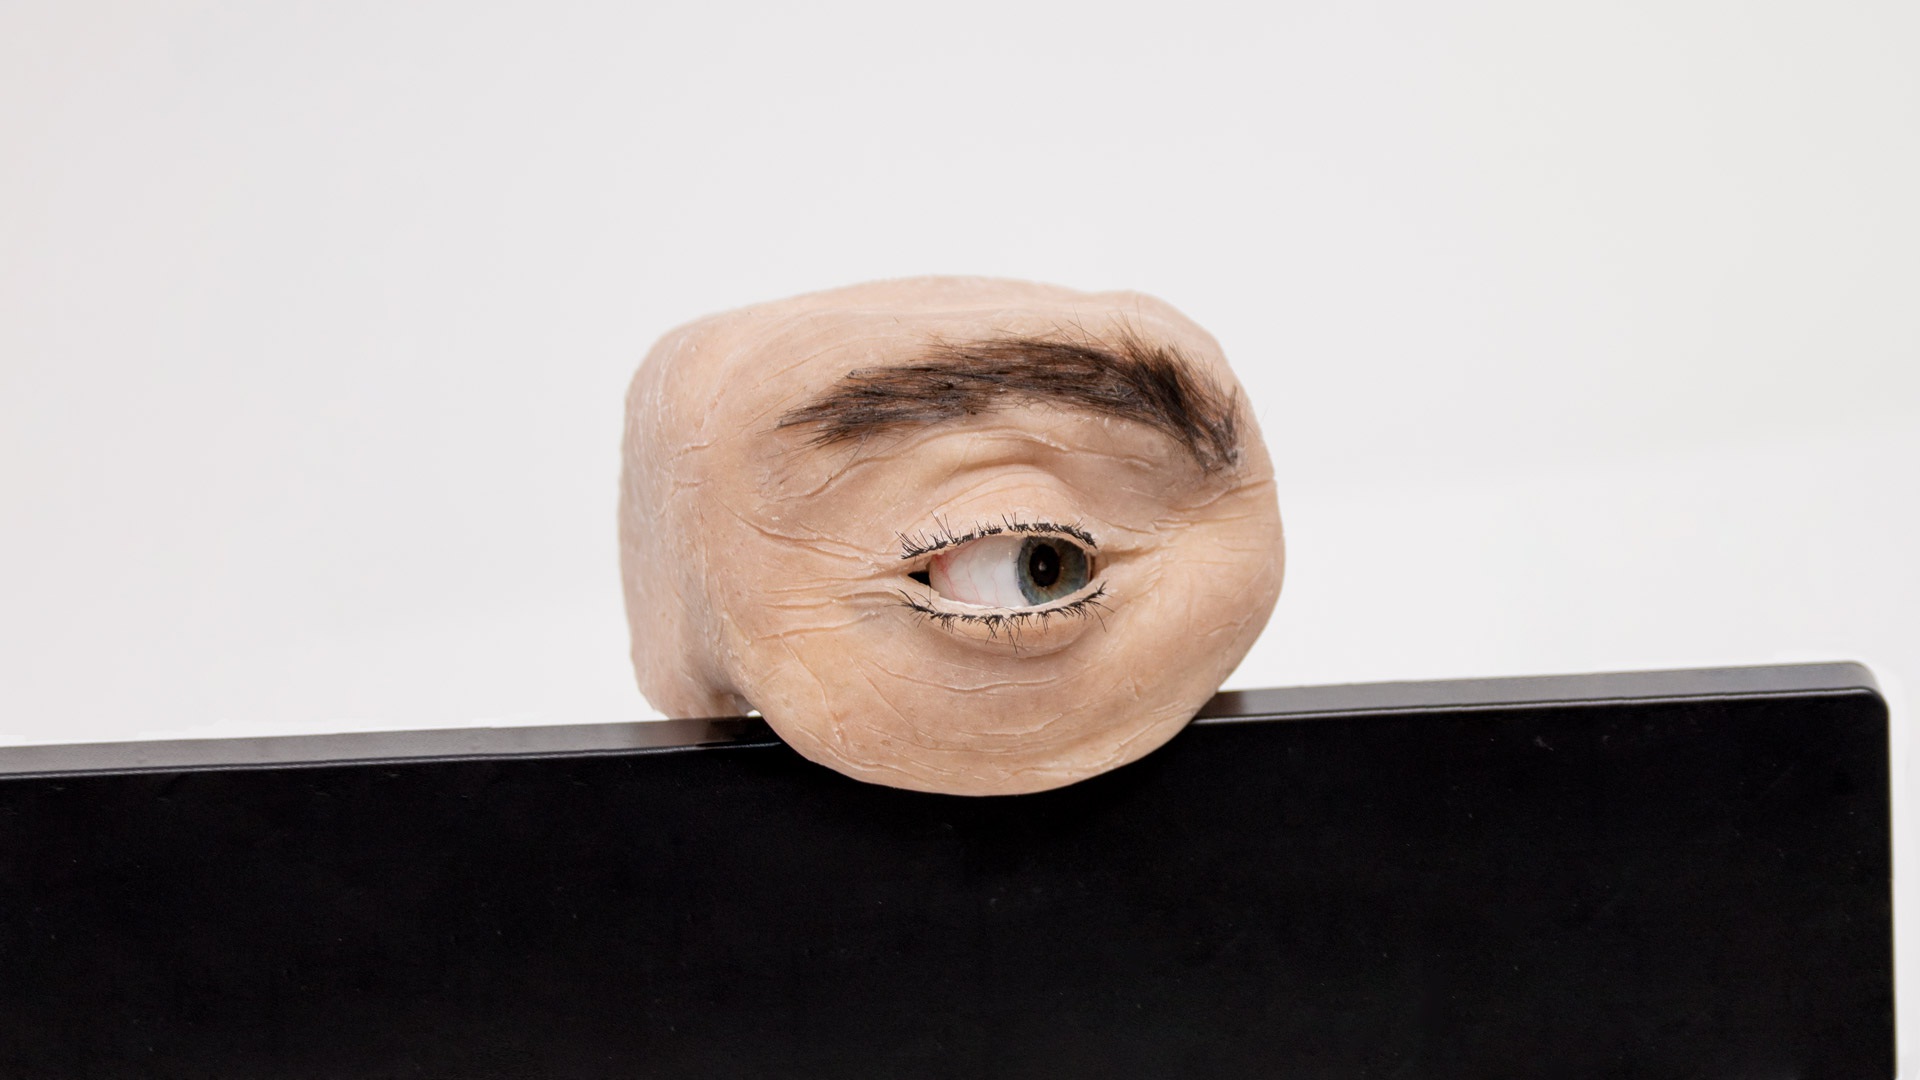 Chiếc webcam kì dị có thiết kế giống mắt người, biết chớp mắt, liếc nhìn - 2